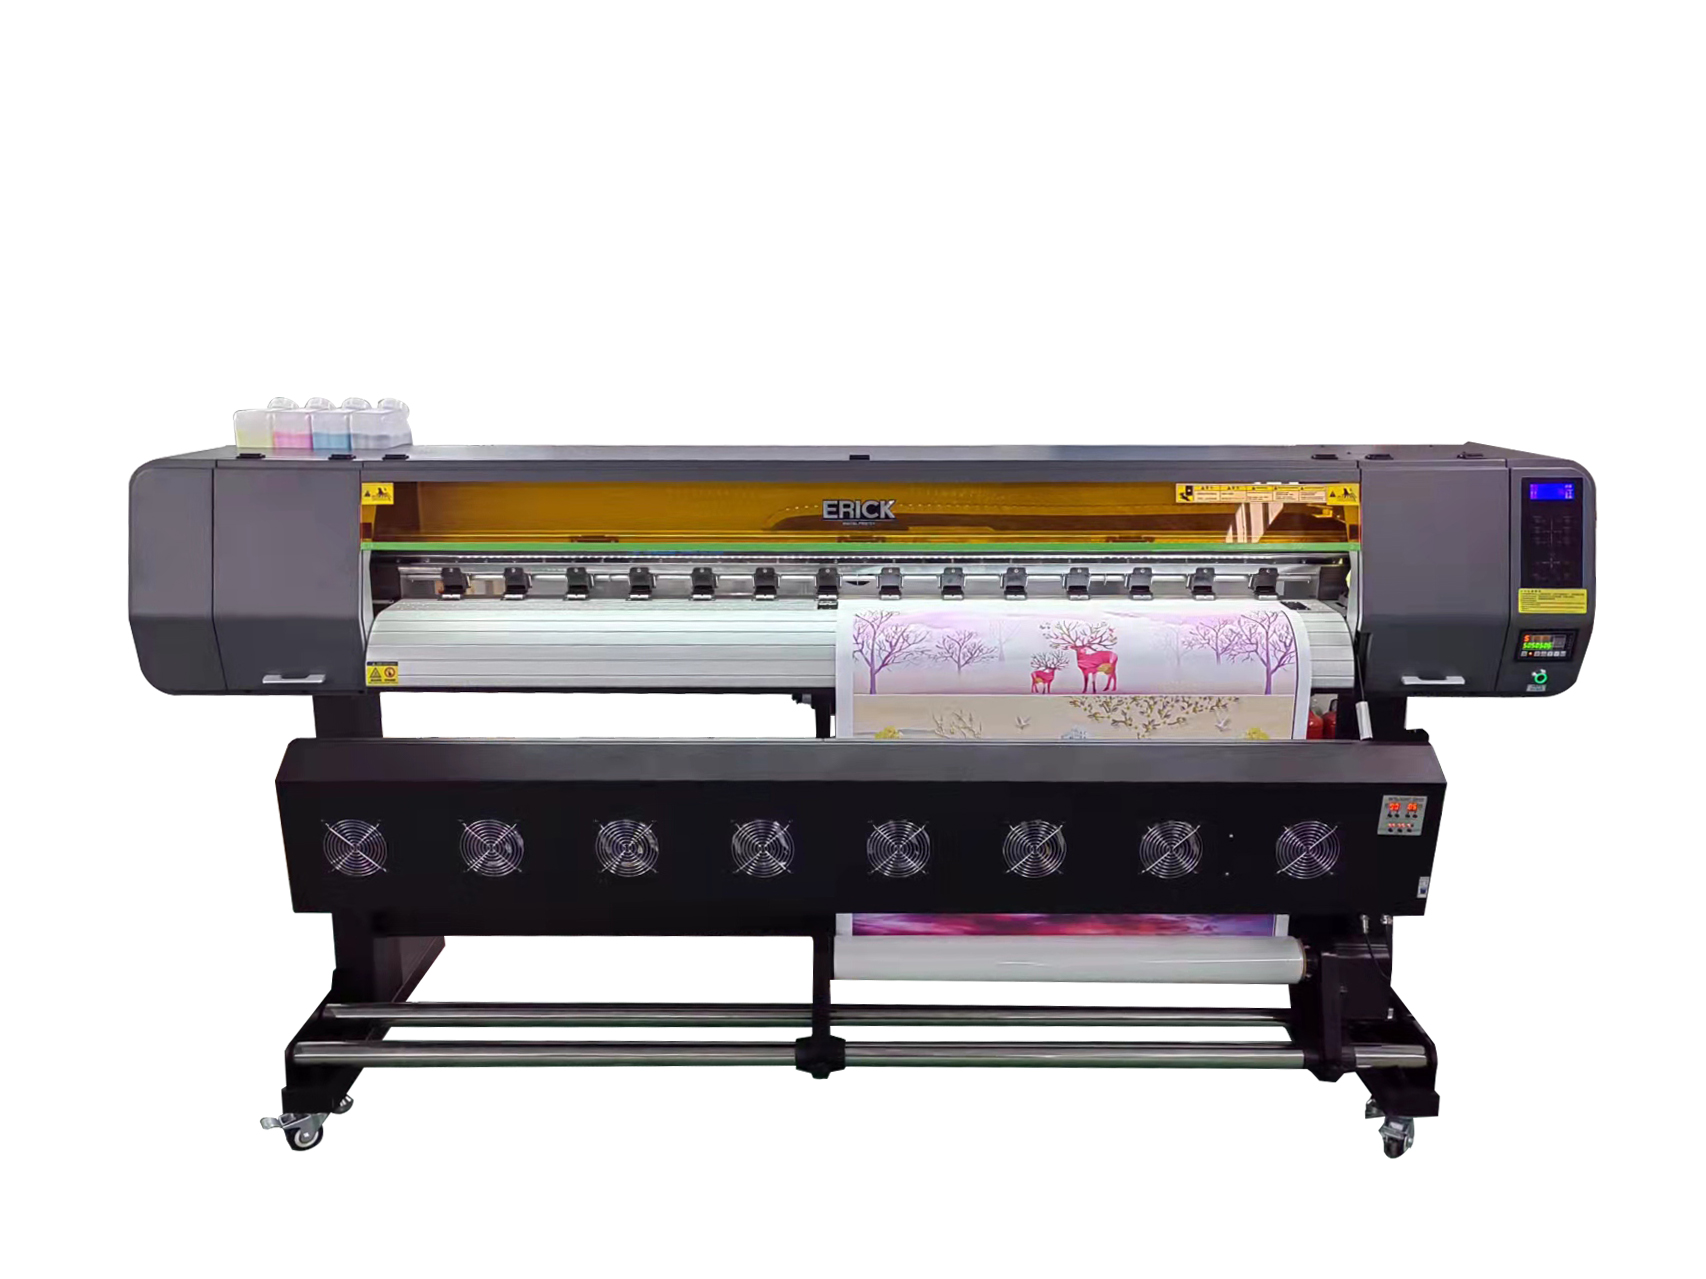 OEM EP-I3200A1 printer eko tretës për plotter me bojë printimi vinyl flex 1,8 m